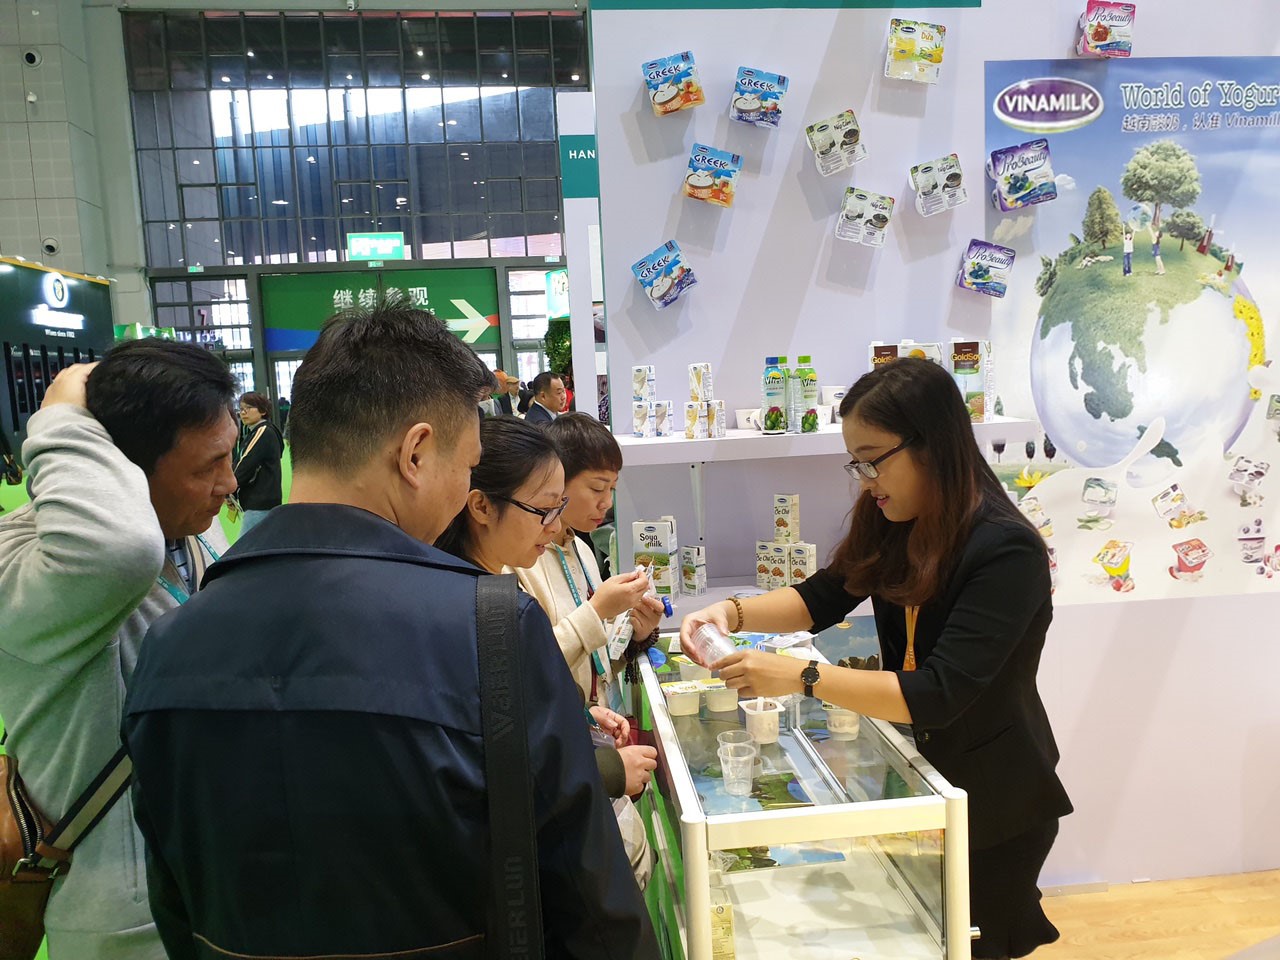 Sản phẩm sữa các loại của Vinamilk ra mắt người tiêu dùng Trung Quốc tại Hội chợ nhập khẩu quốc tế Trung Quốc lần thứ nhất (CIIE 2018) tại Thượng Hải.